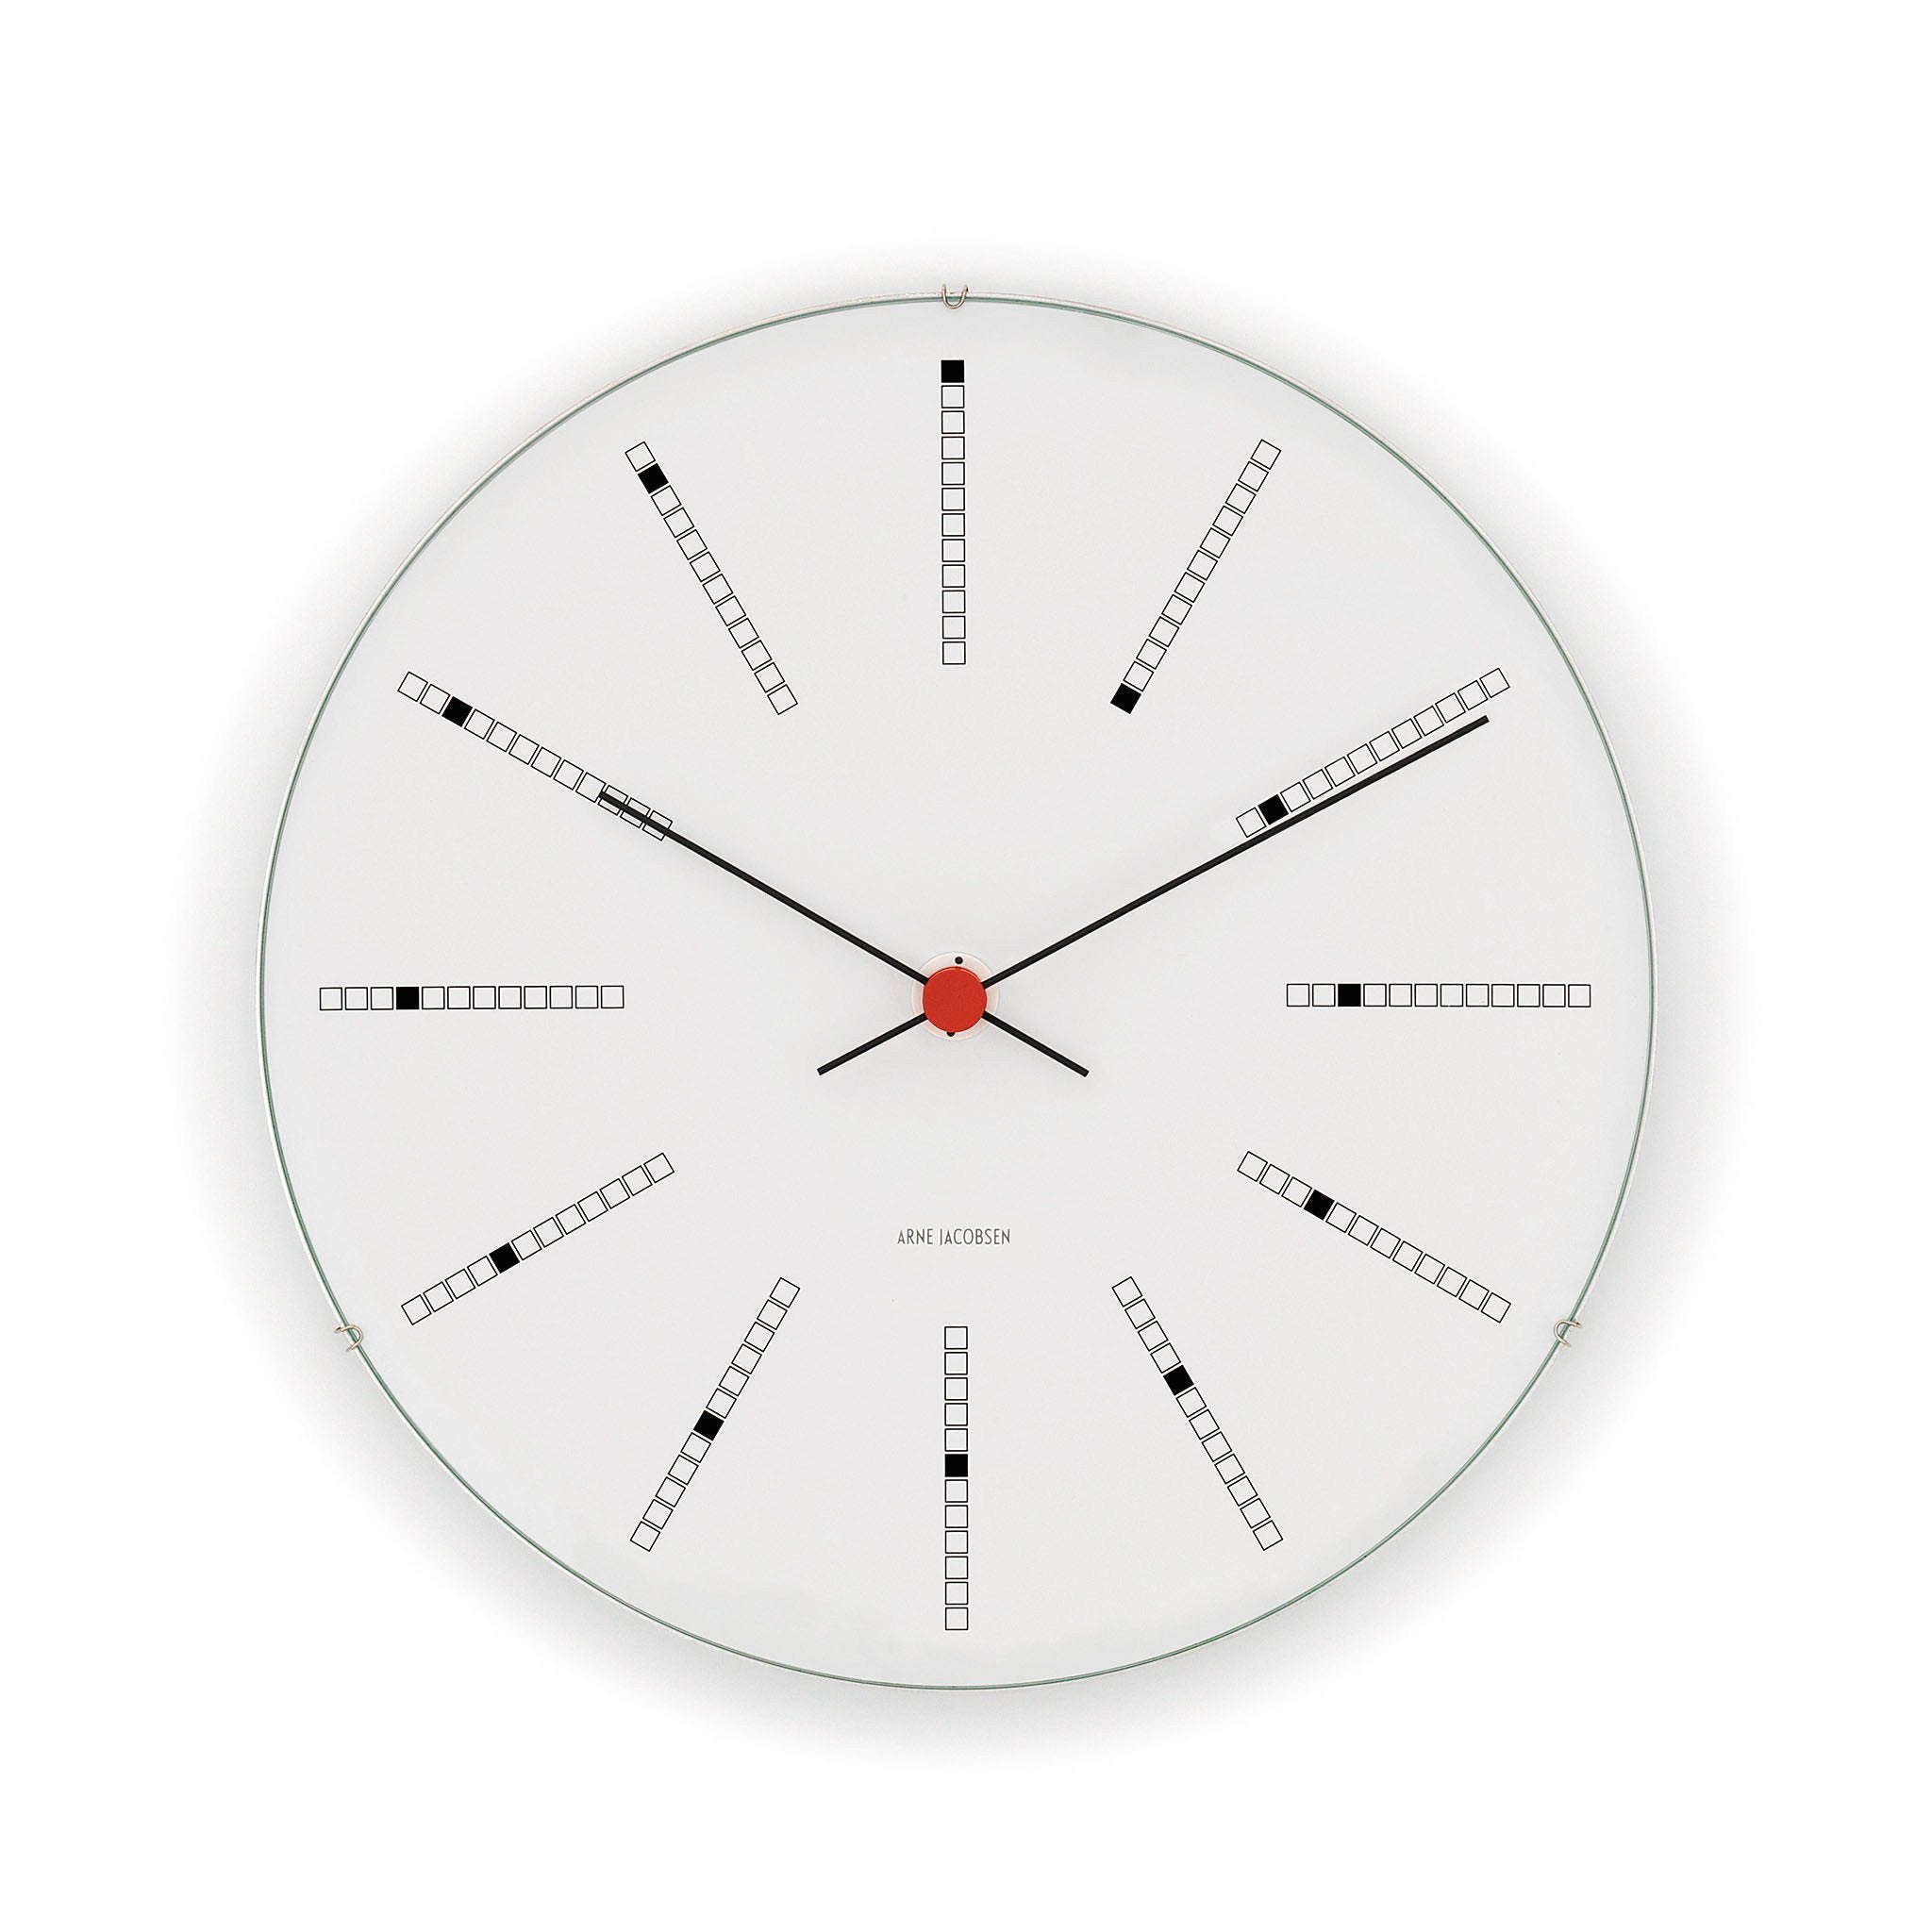 Arne Jacobsen Bankers Wall Clock, 19" /48 cm